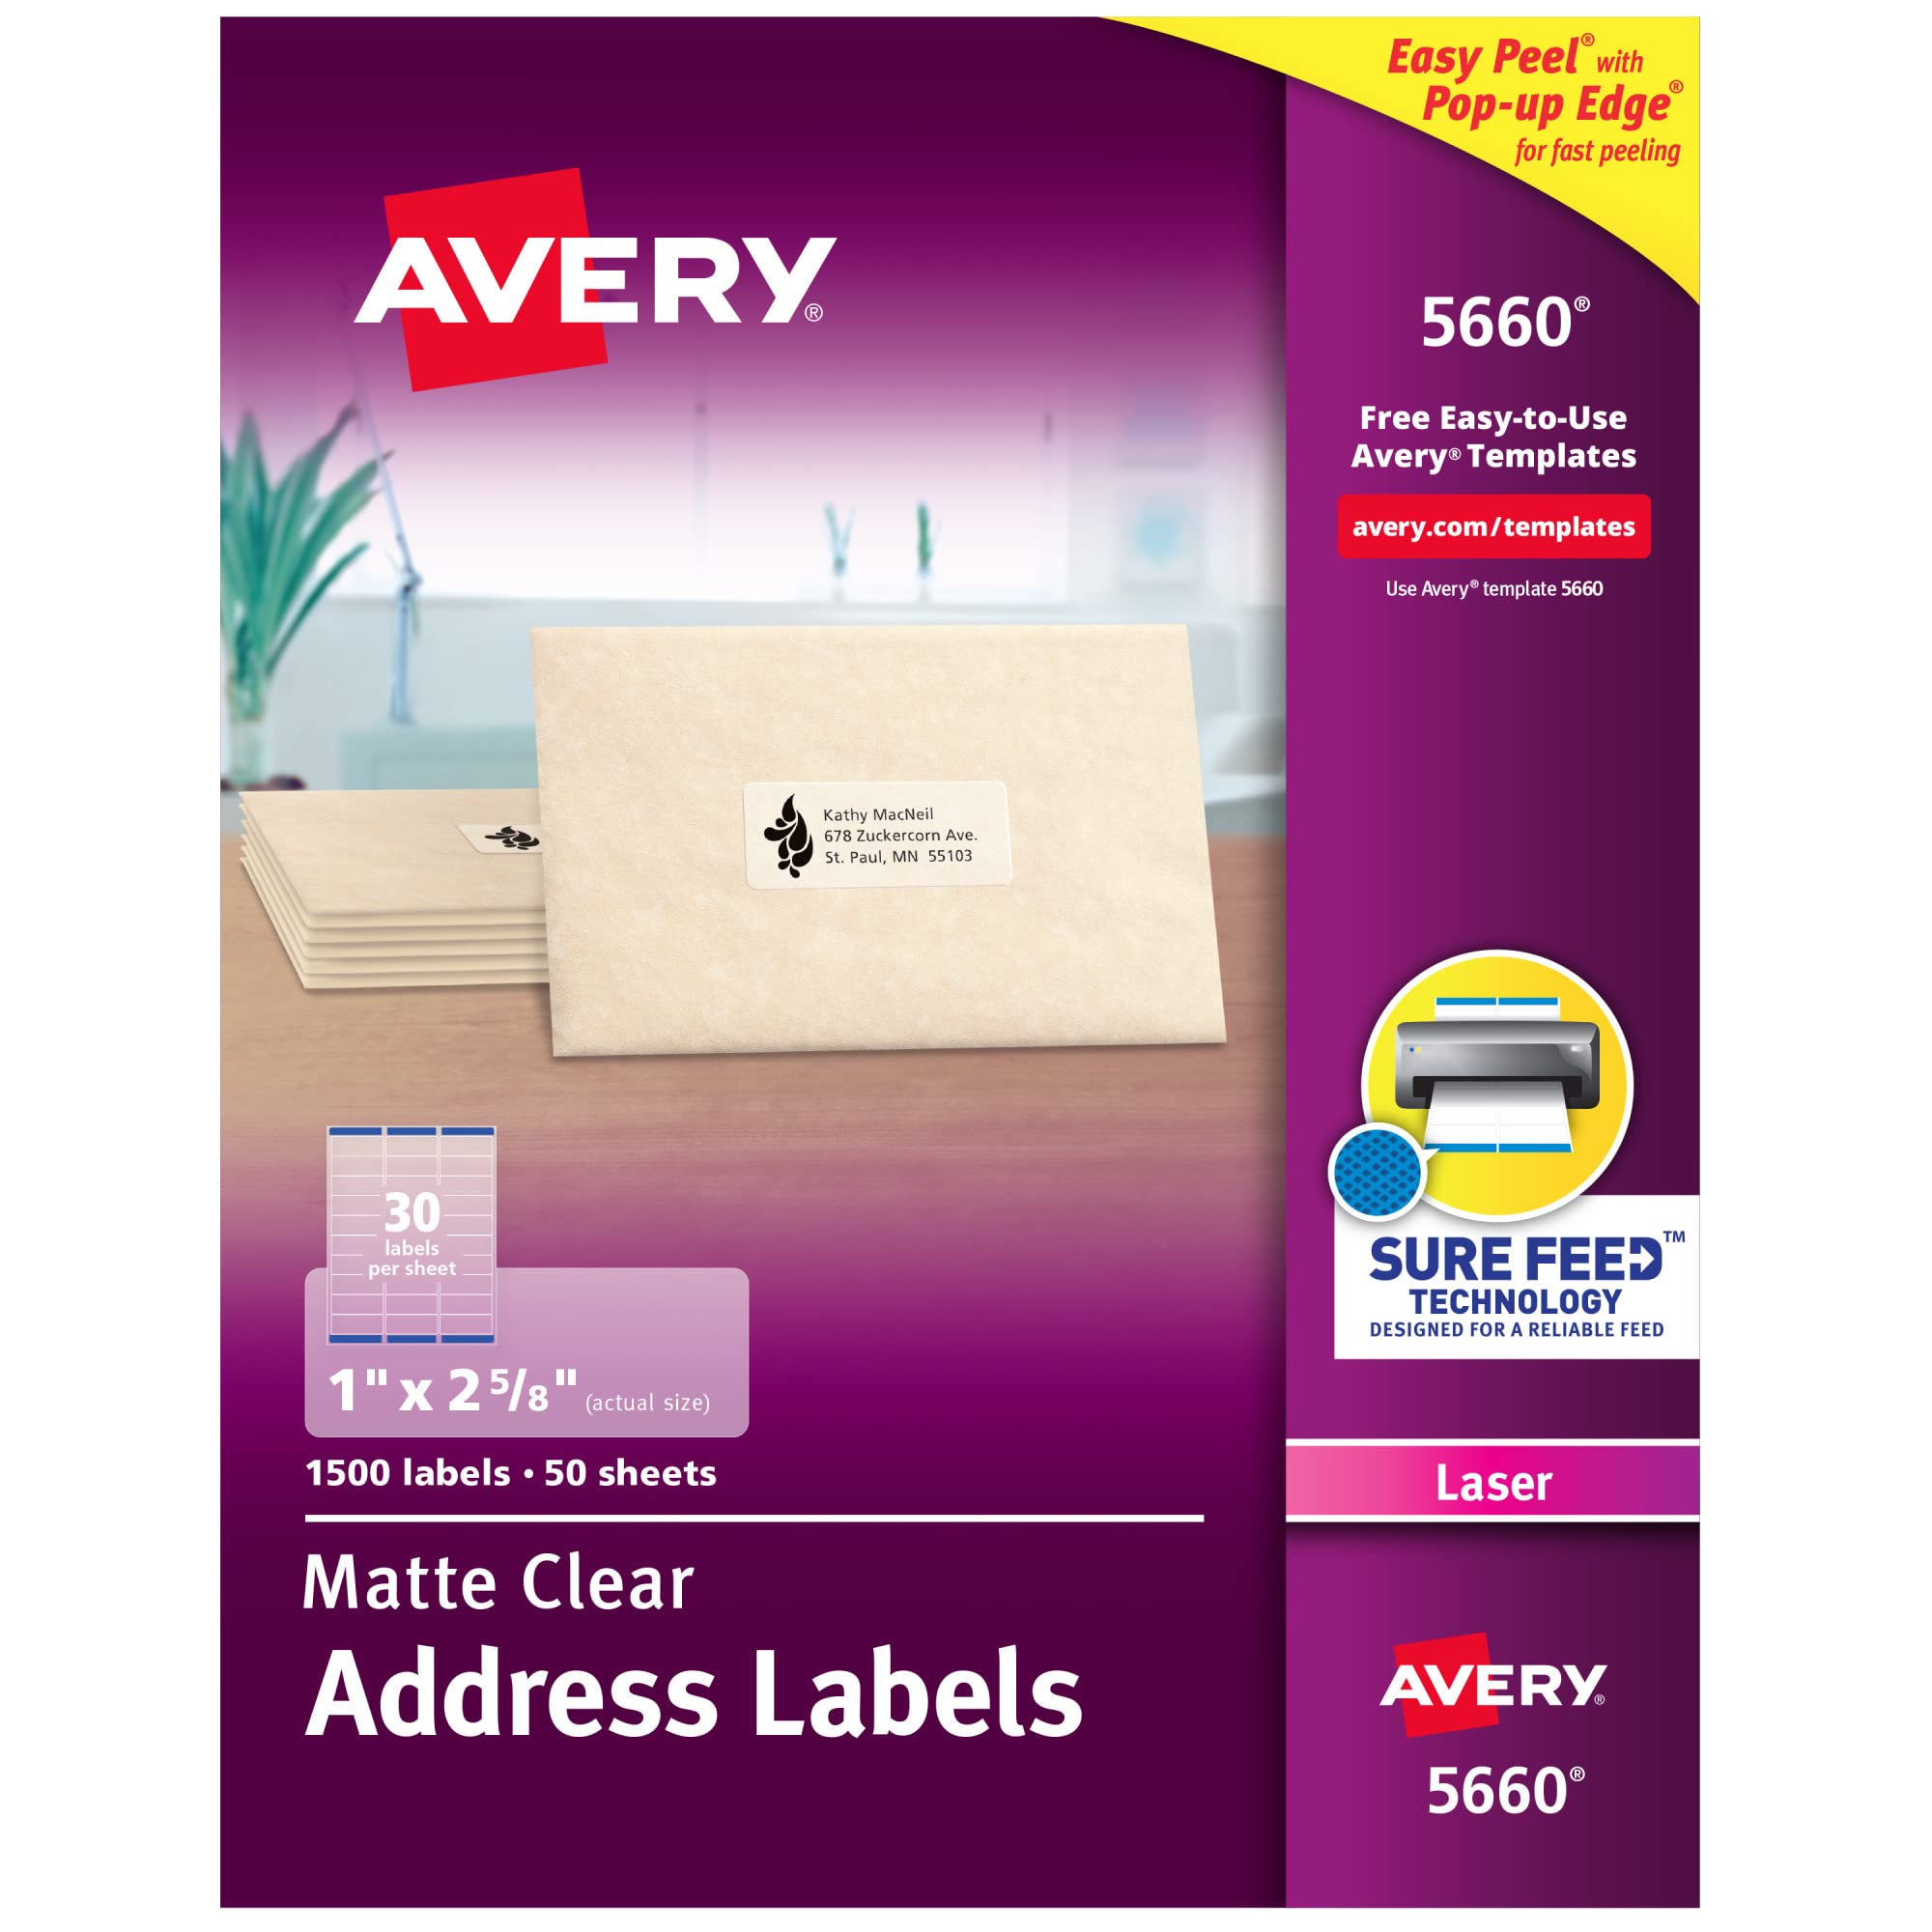 Avery Étiquettes d'adresse transparentes à décollement facile pour imprimantes laser 1'' x 2-5/8''